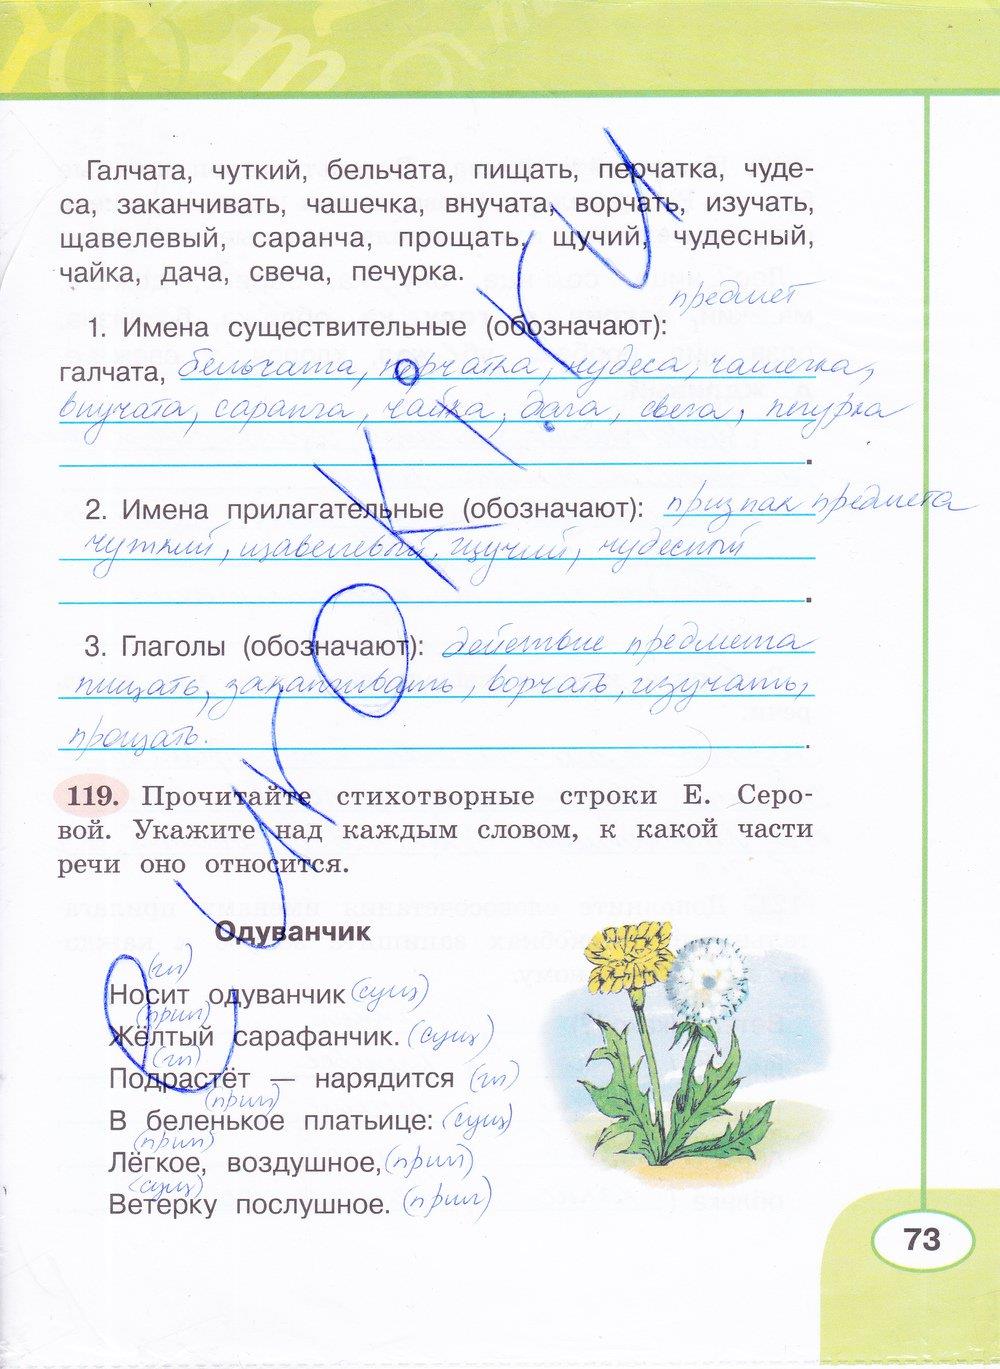 гдз 4 класс рабочая тетрадь часть 1 страница 73 русский язык Климанова, Бабушкина